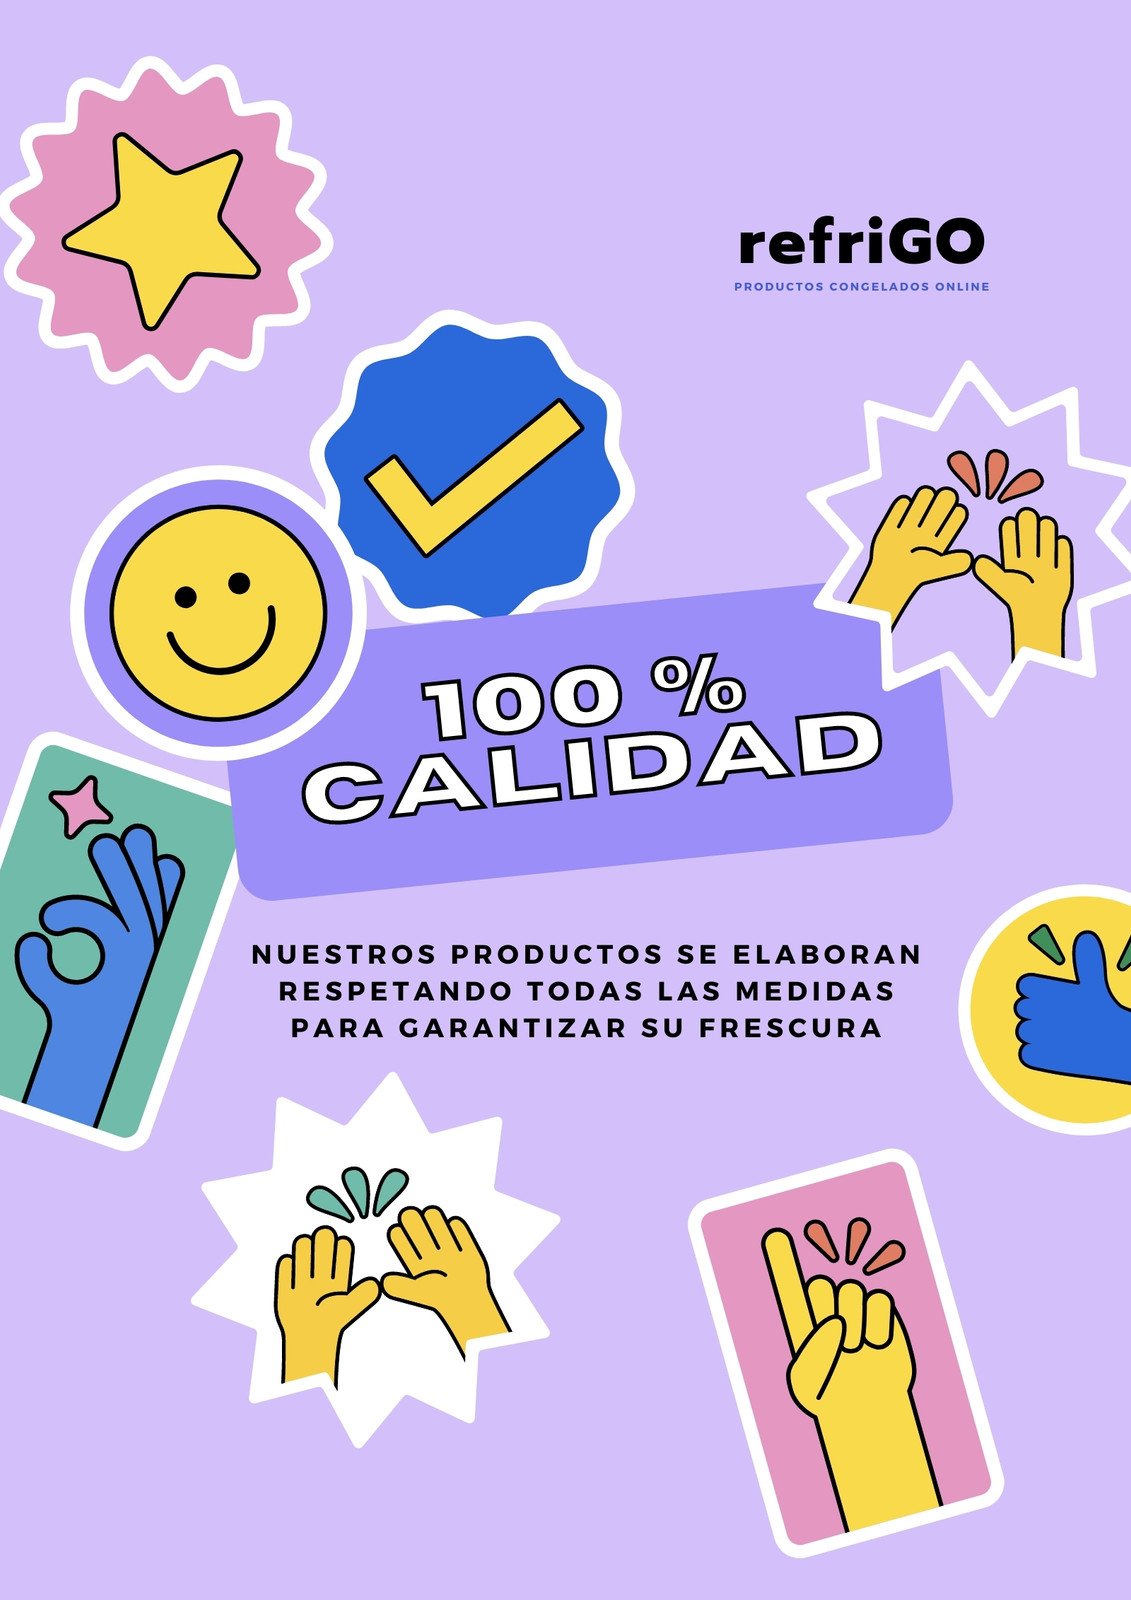 Flyer de diseño playful Sobre seguro de calidad de productos congelados, color lavanda y lila con figuras geométricas y emojis ilustrados